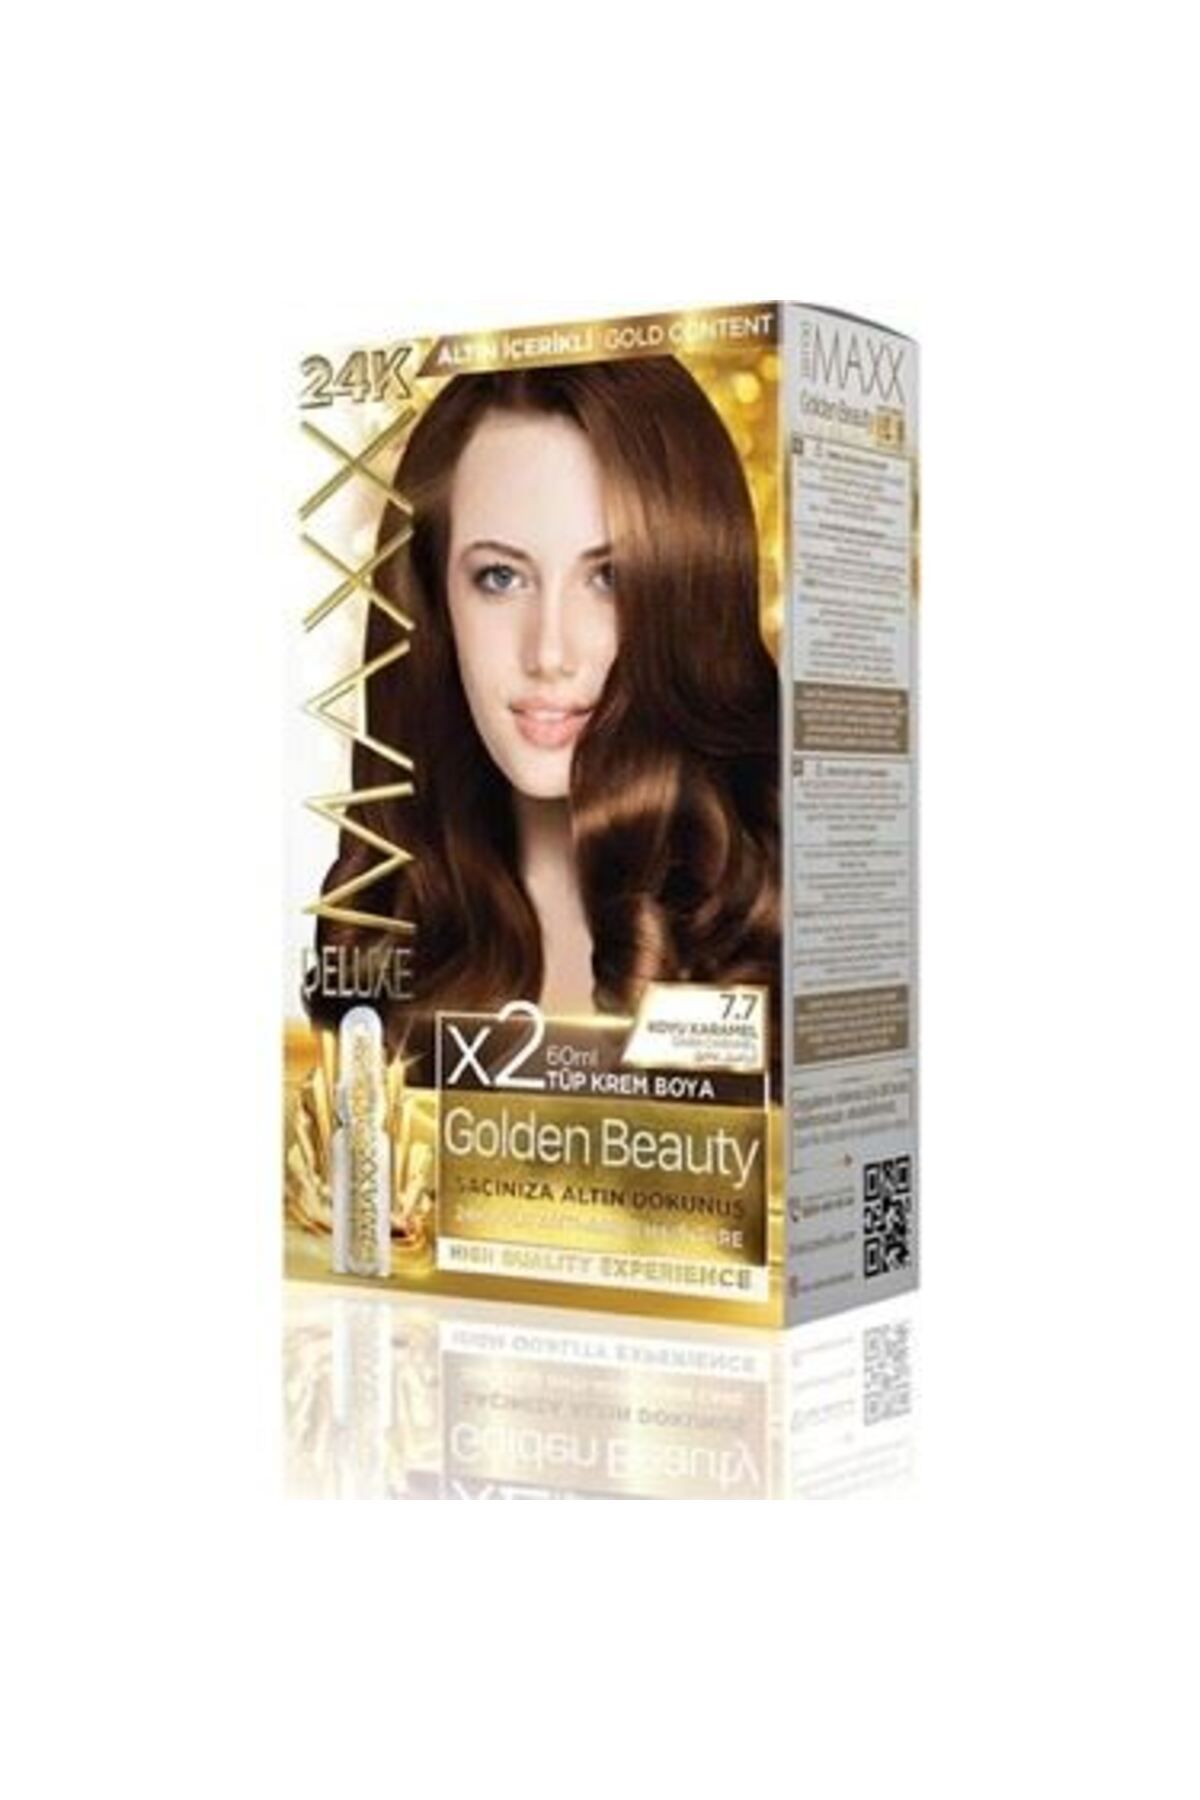 MAXX DELUXE Golden Altın Içerikli Saç Boyası 7.7 Koyu Karamel